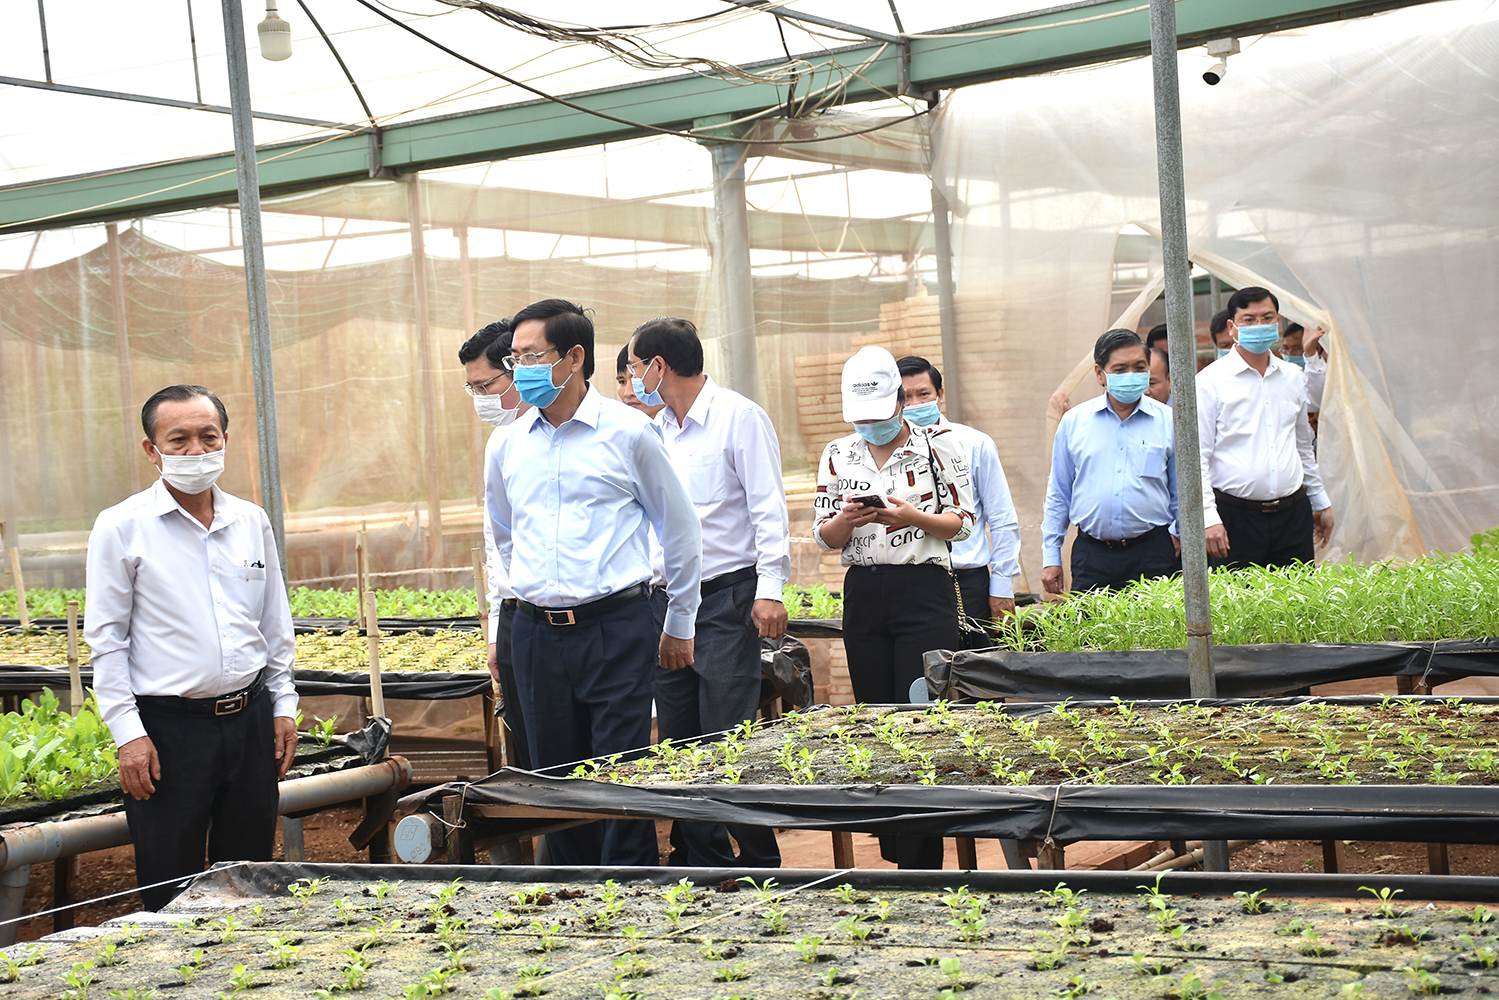 Bí thư Tỉnh ủy Phạm Viết Thanh (thứ 2 từ trái sang) cùng đoàn công tác của Tỉnh ủy tham quan trang trại rau sạch Vương Huy tại huyện Châu Đức.